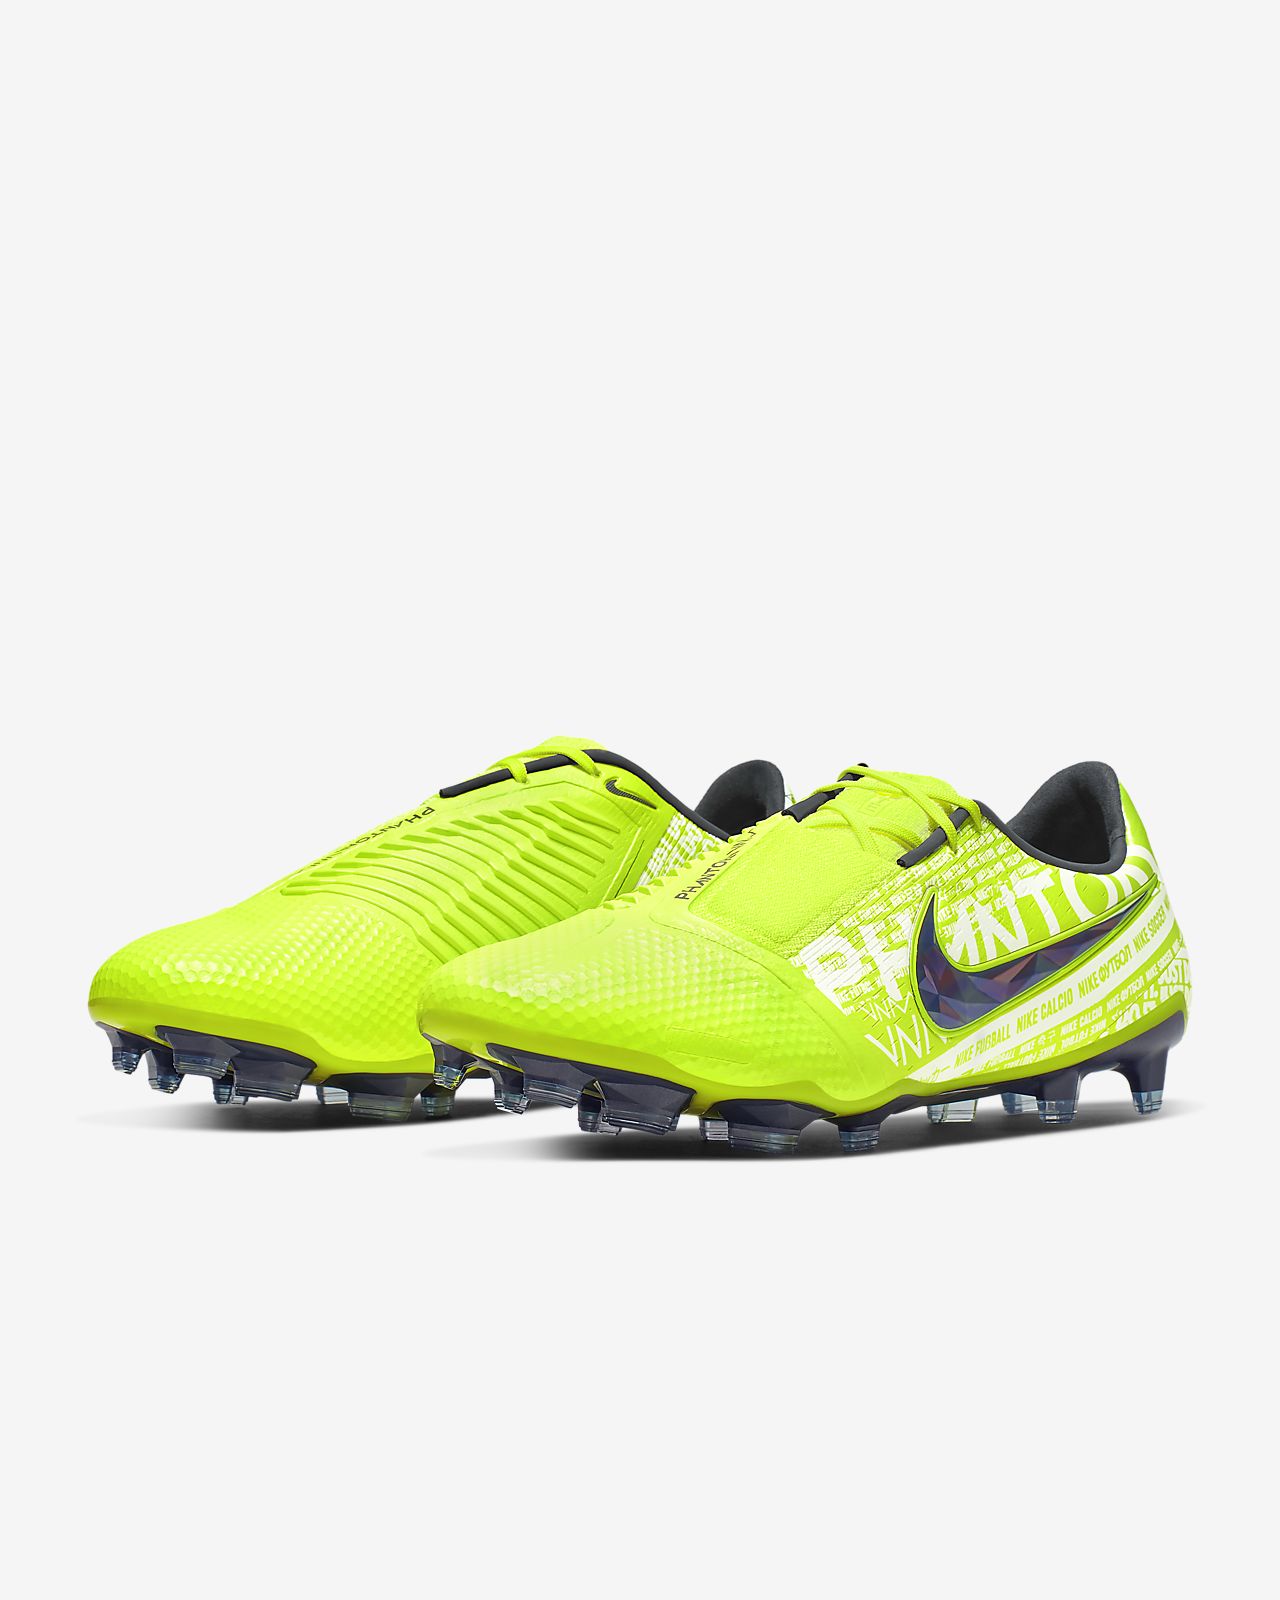 Nike Men's's Hypervenom Phantom 3 Ag pro Football Boots